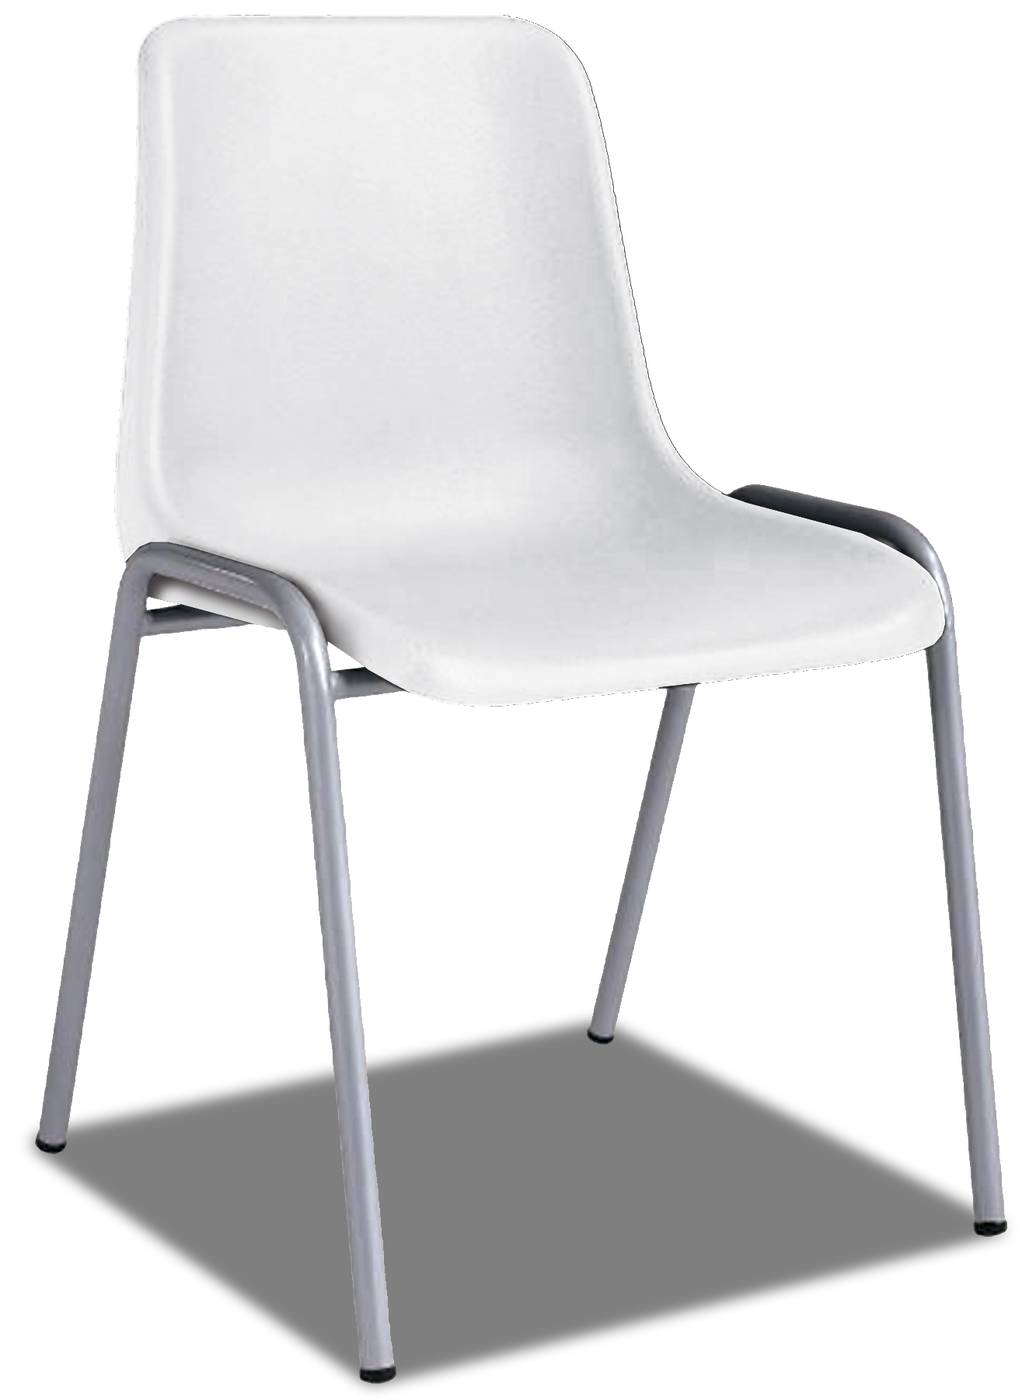 Silla de oficina apilable, con asiento y respaldo en color blanco